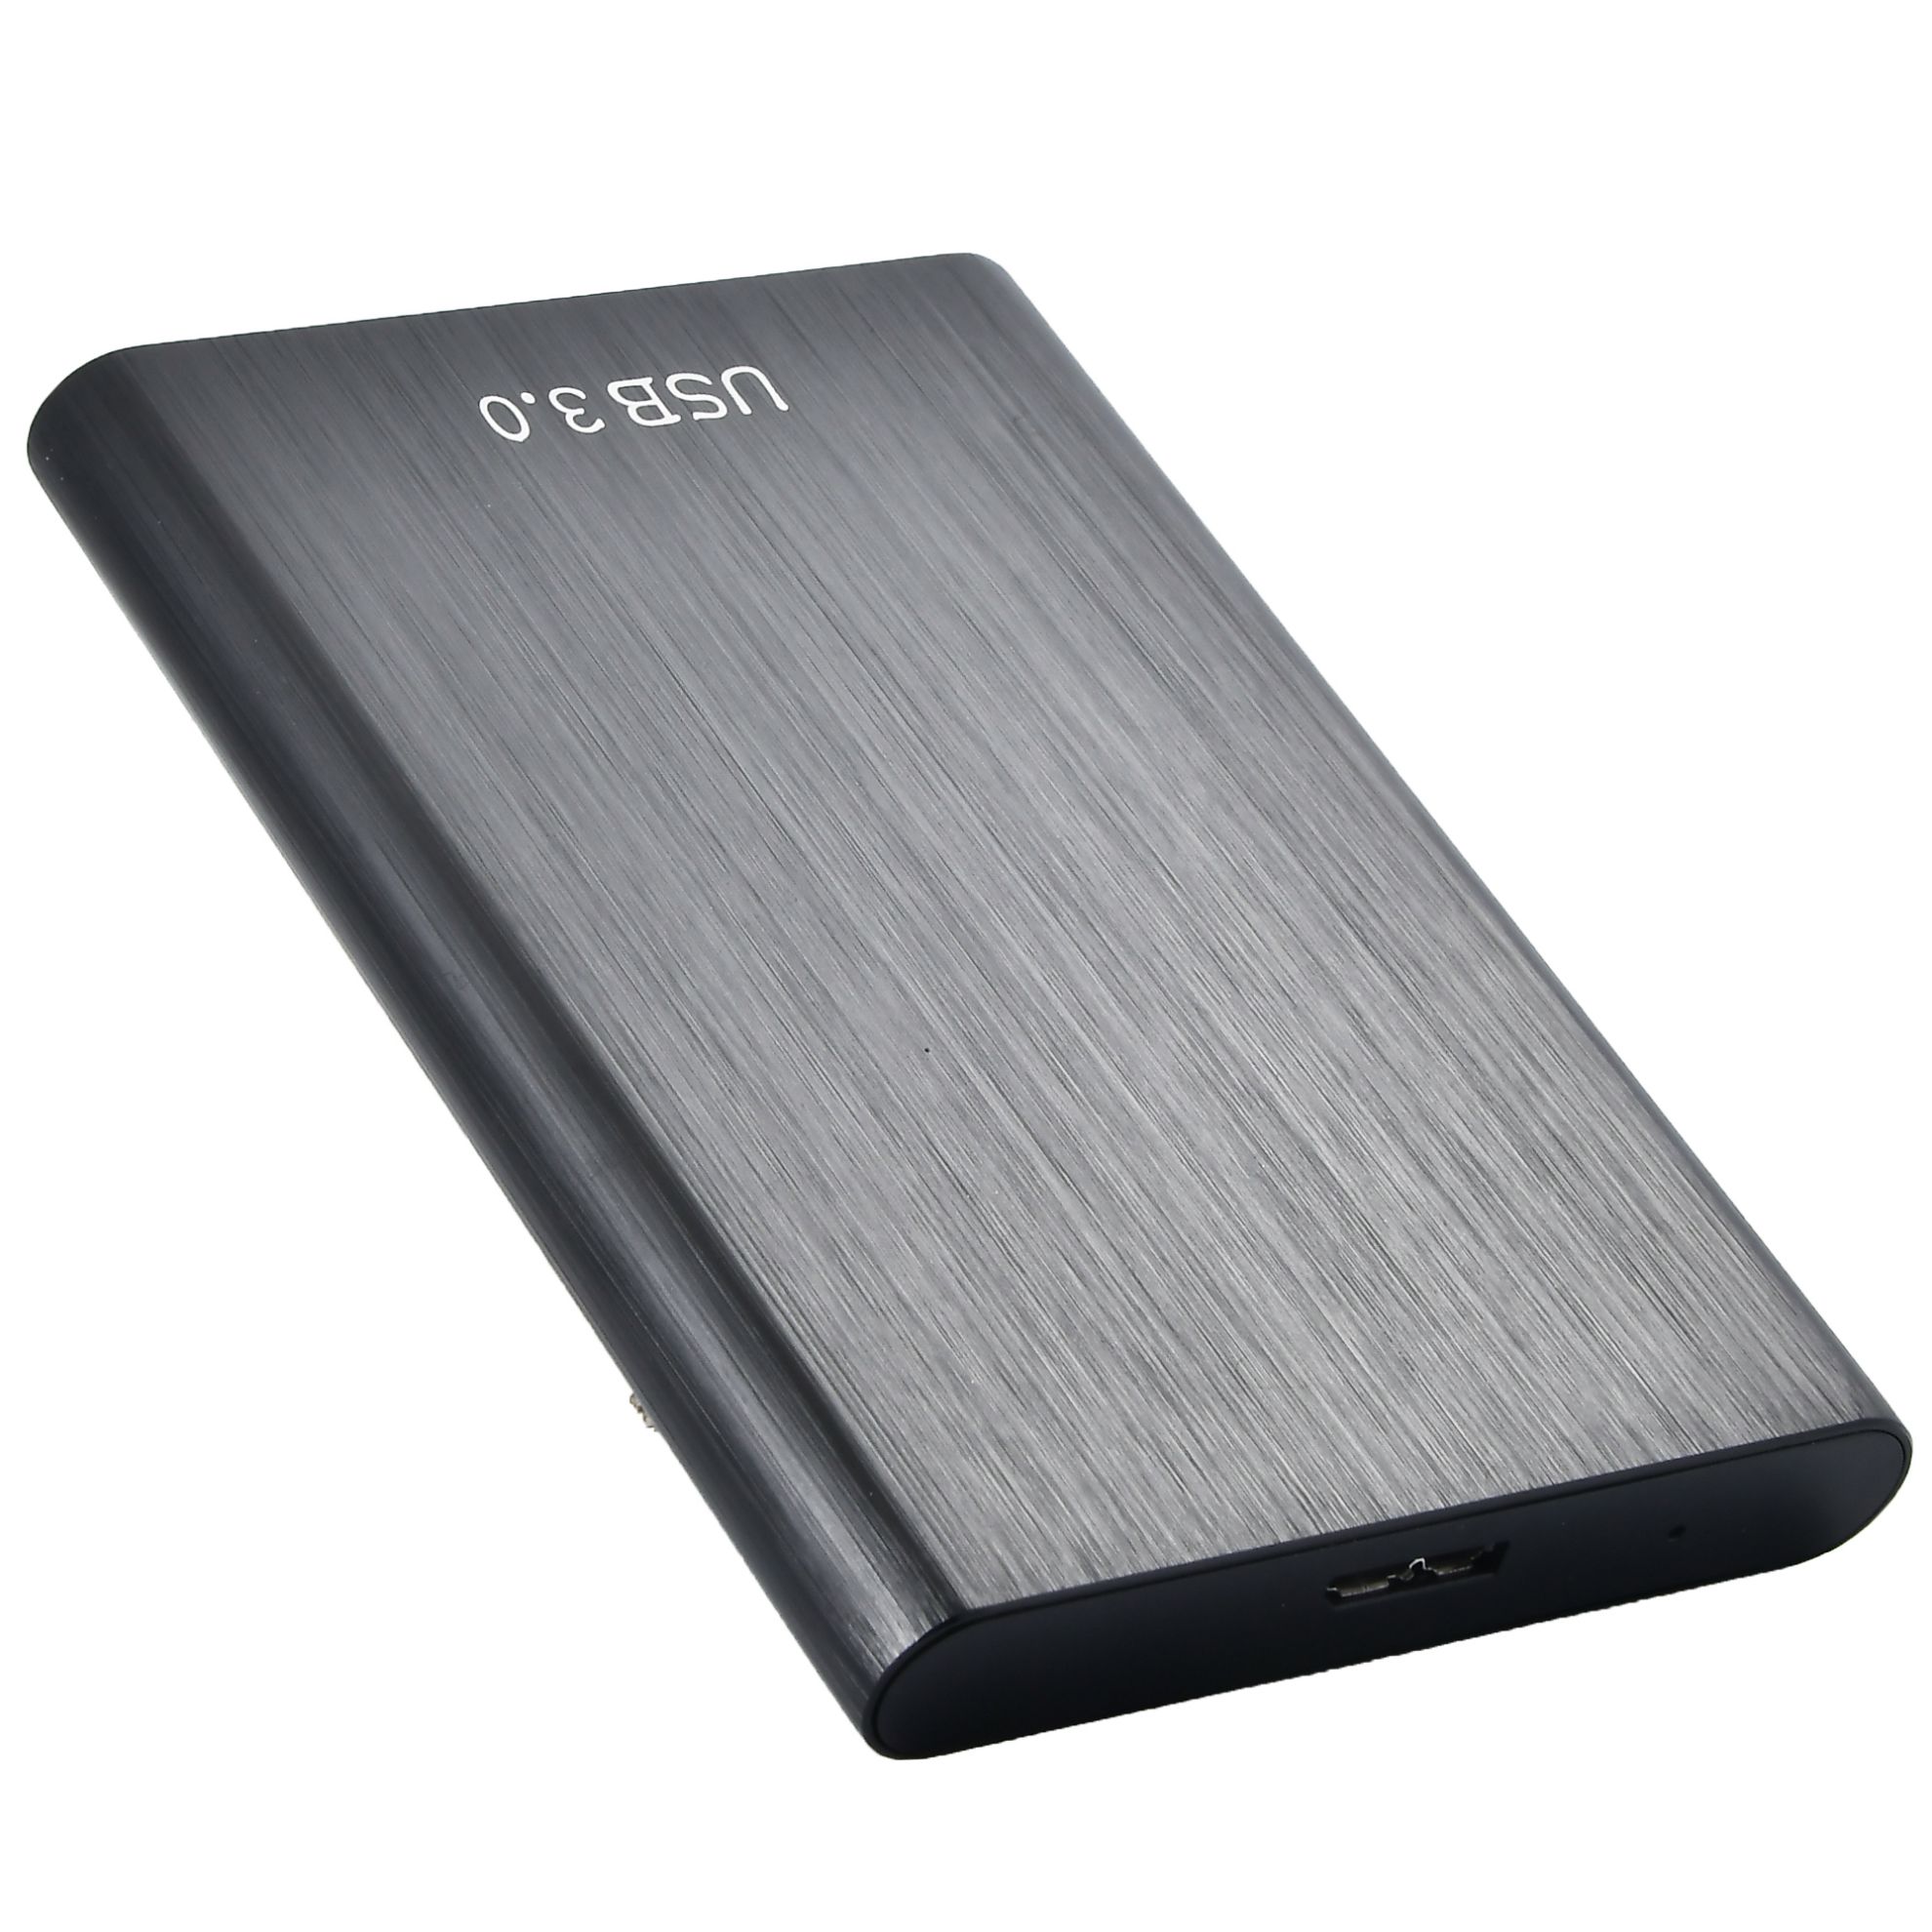 Disco rigido esterno da 2 TB Disco rigido portatile HHD esterno USB 3.1 ad alta velocità compatibile con PC, laptop e Mac